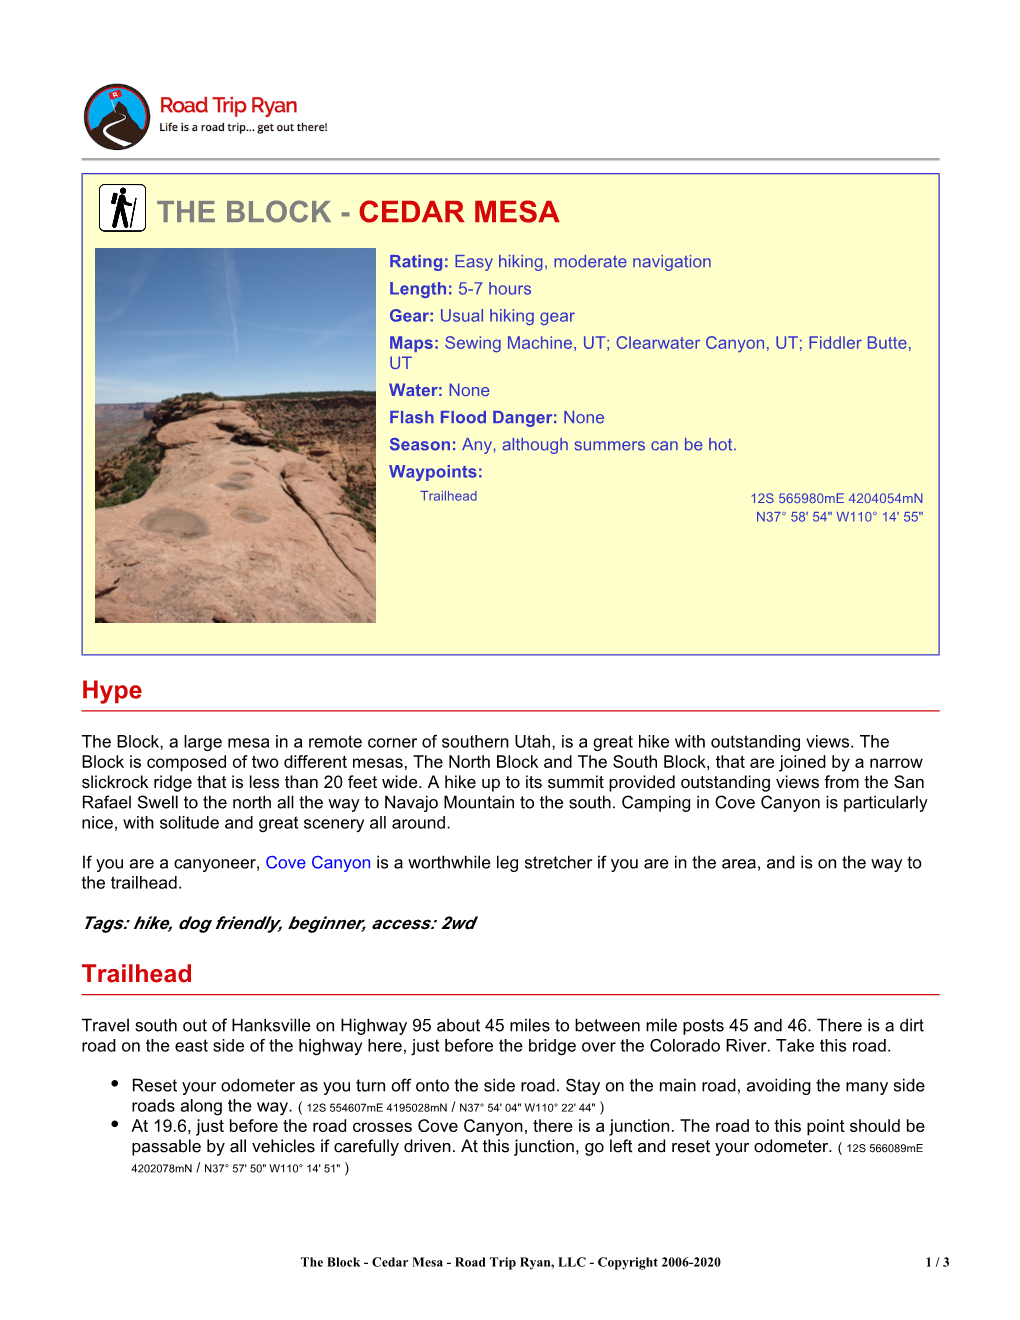 The Block - Cedar Mesa